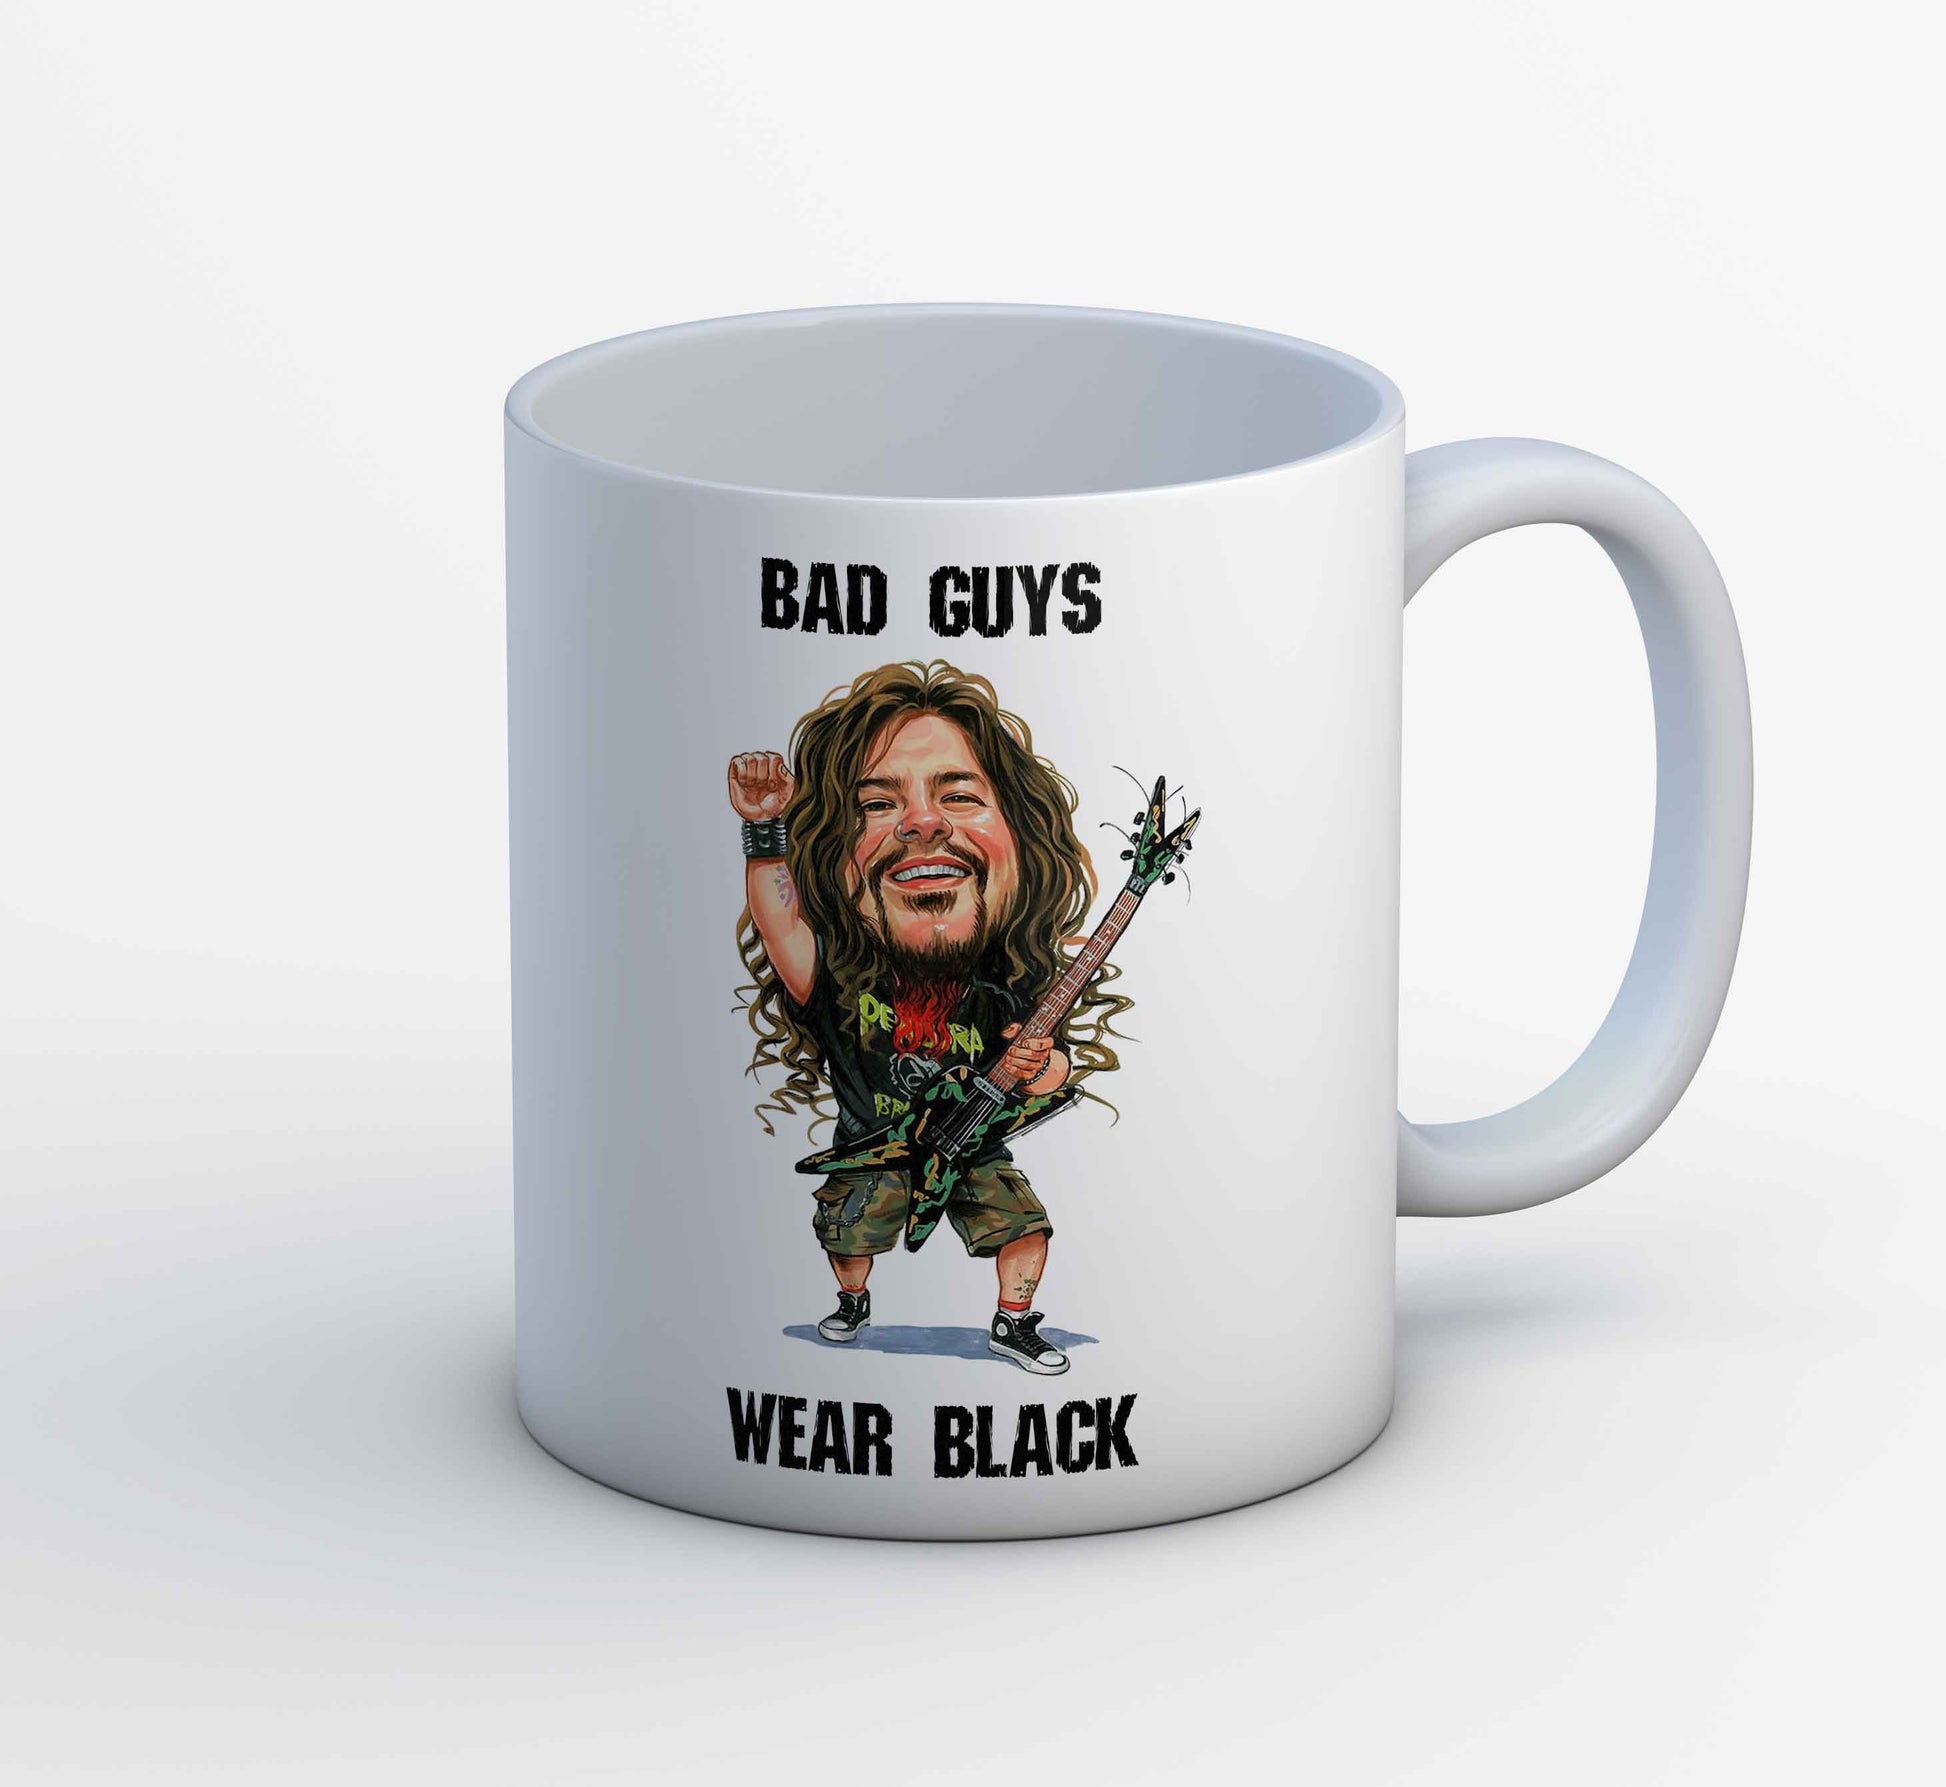 pantera bad guys wear black mug coffee ceramic music band buy online india the banyan tee tbt men women girls boys unisex